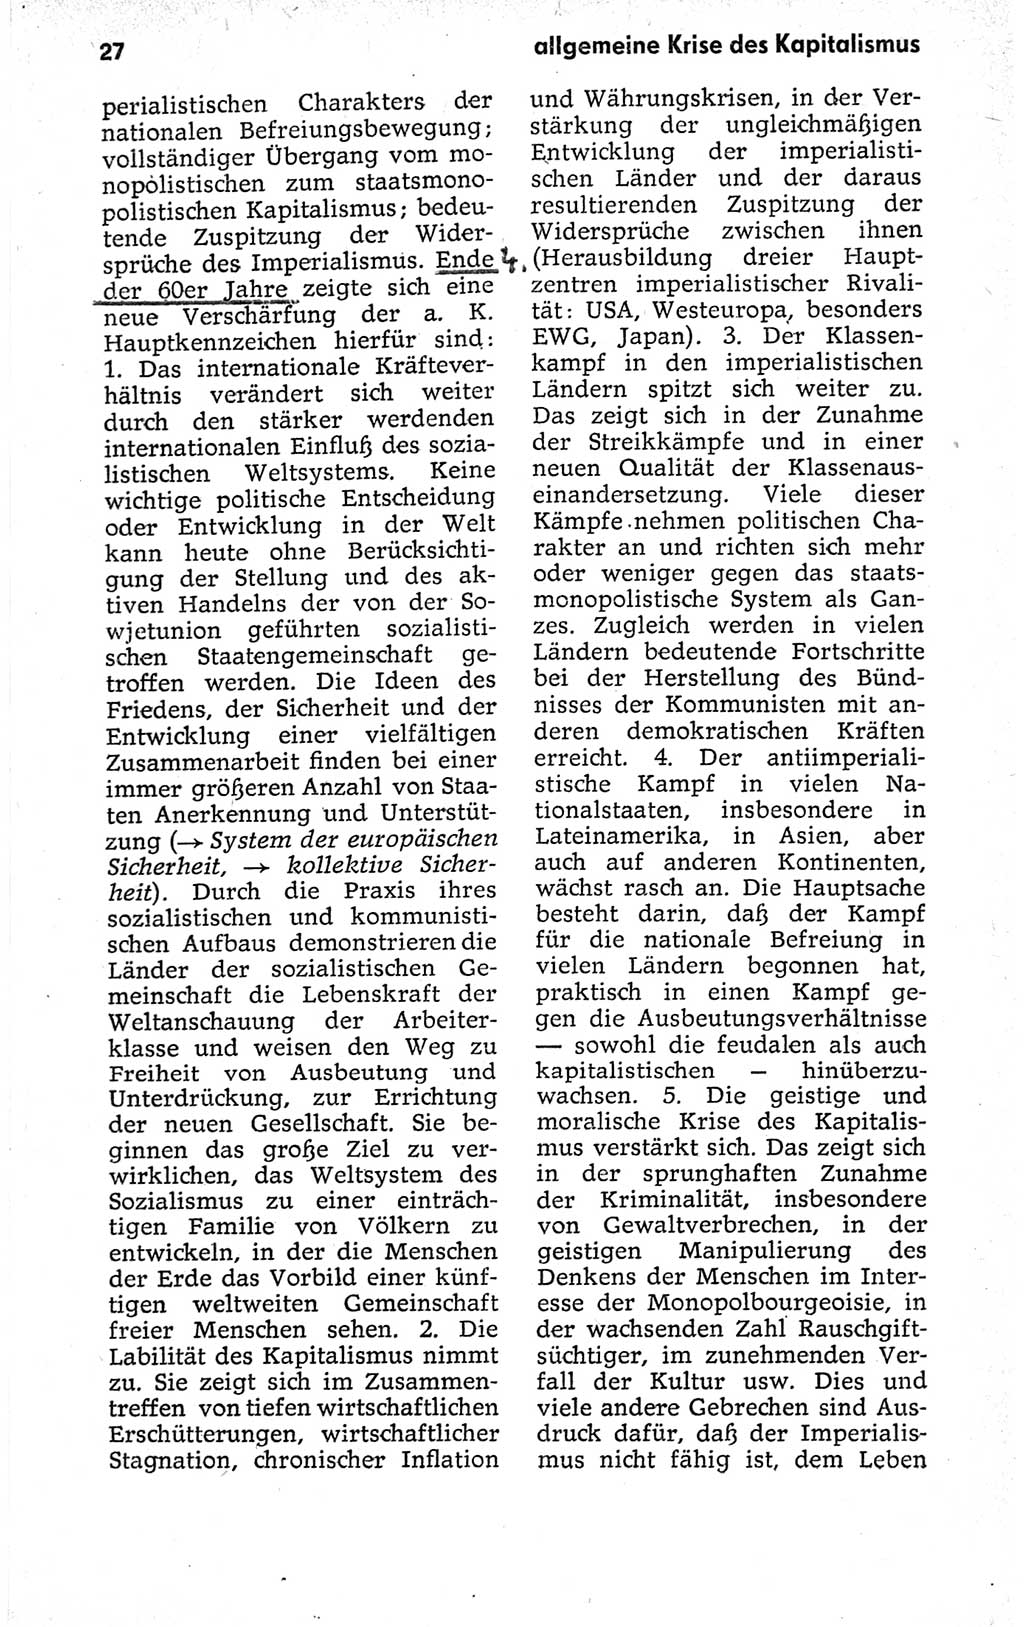 Kleines politisches Wörterbuch [Deutsche Demokratische Republik (DDR)] 1973, Seite 27 (Kl. pol. Wb. DDR 1973, S. 27)